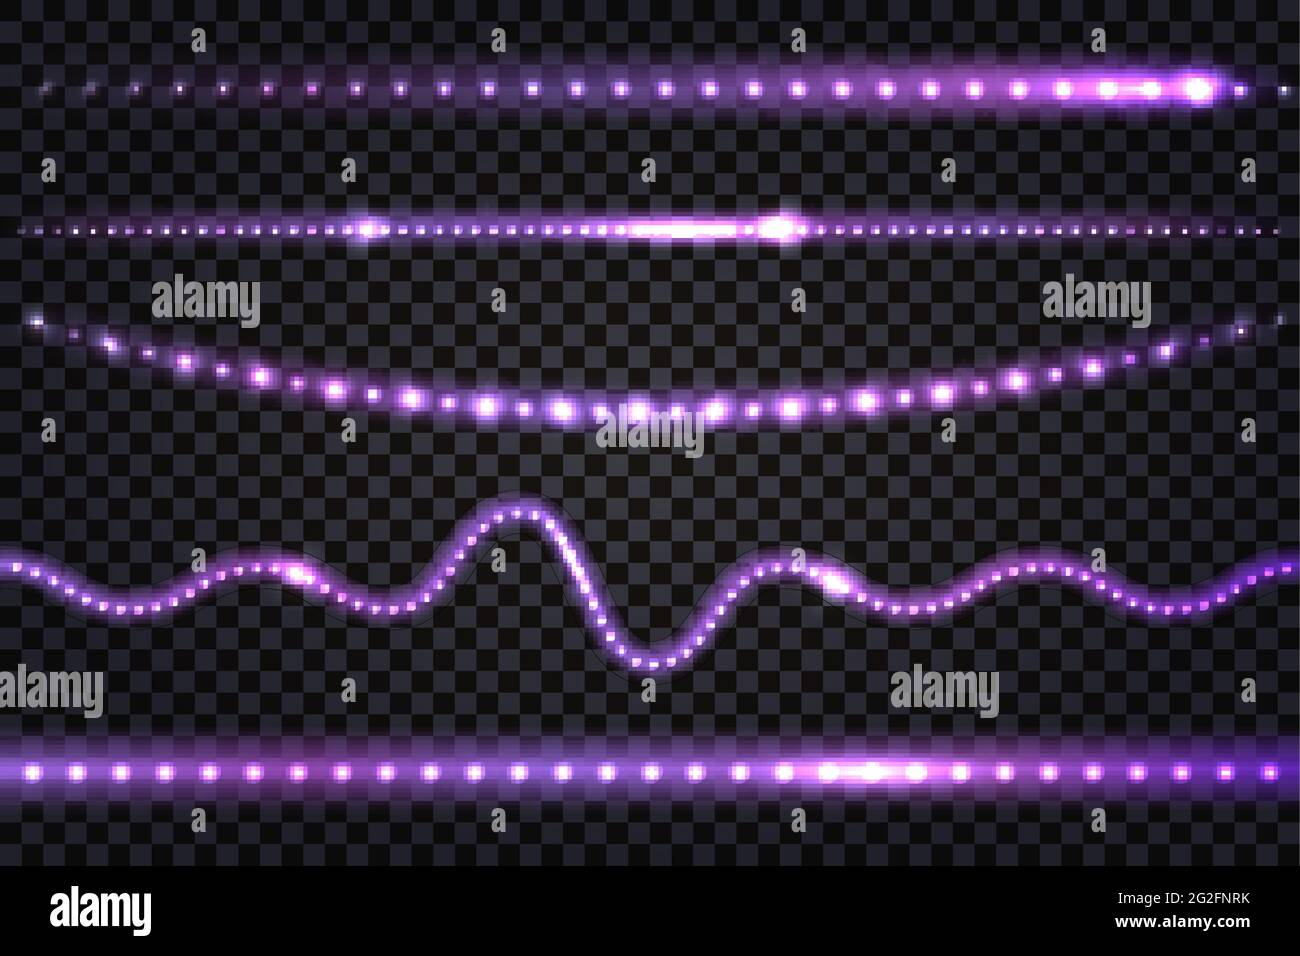 LED-Licht Girlanden mit violettem Neon-Glow-Effekt, mit Glitzerlicht-Set aus Linien, beleuchteten Streifen und Wellen, isolierten Bändern auf transparentem Backgr Stock Vektor